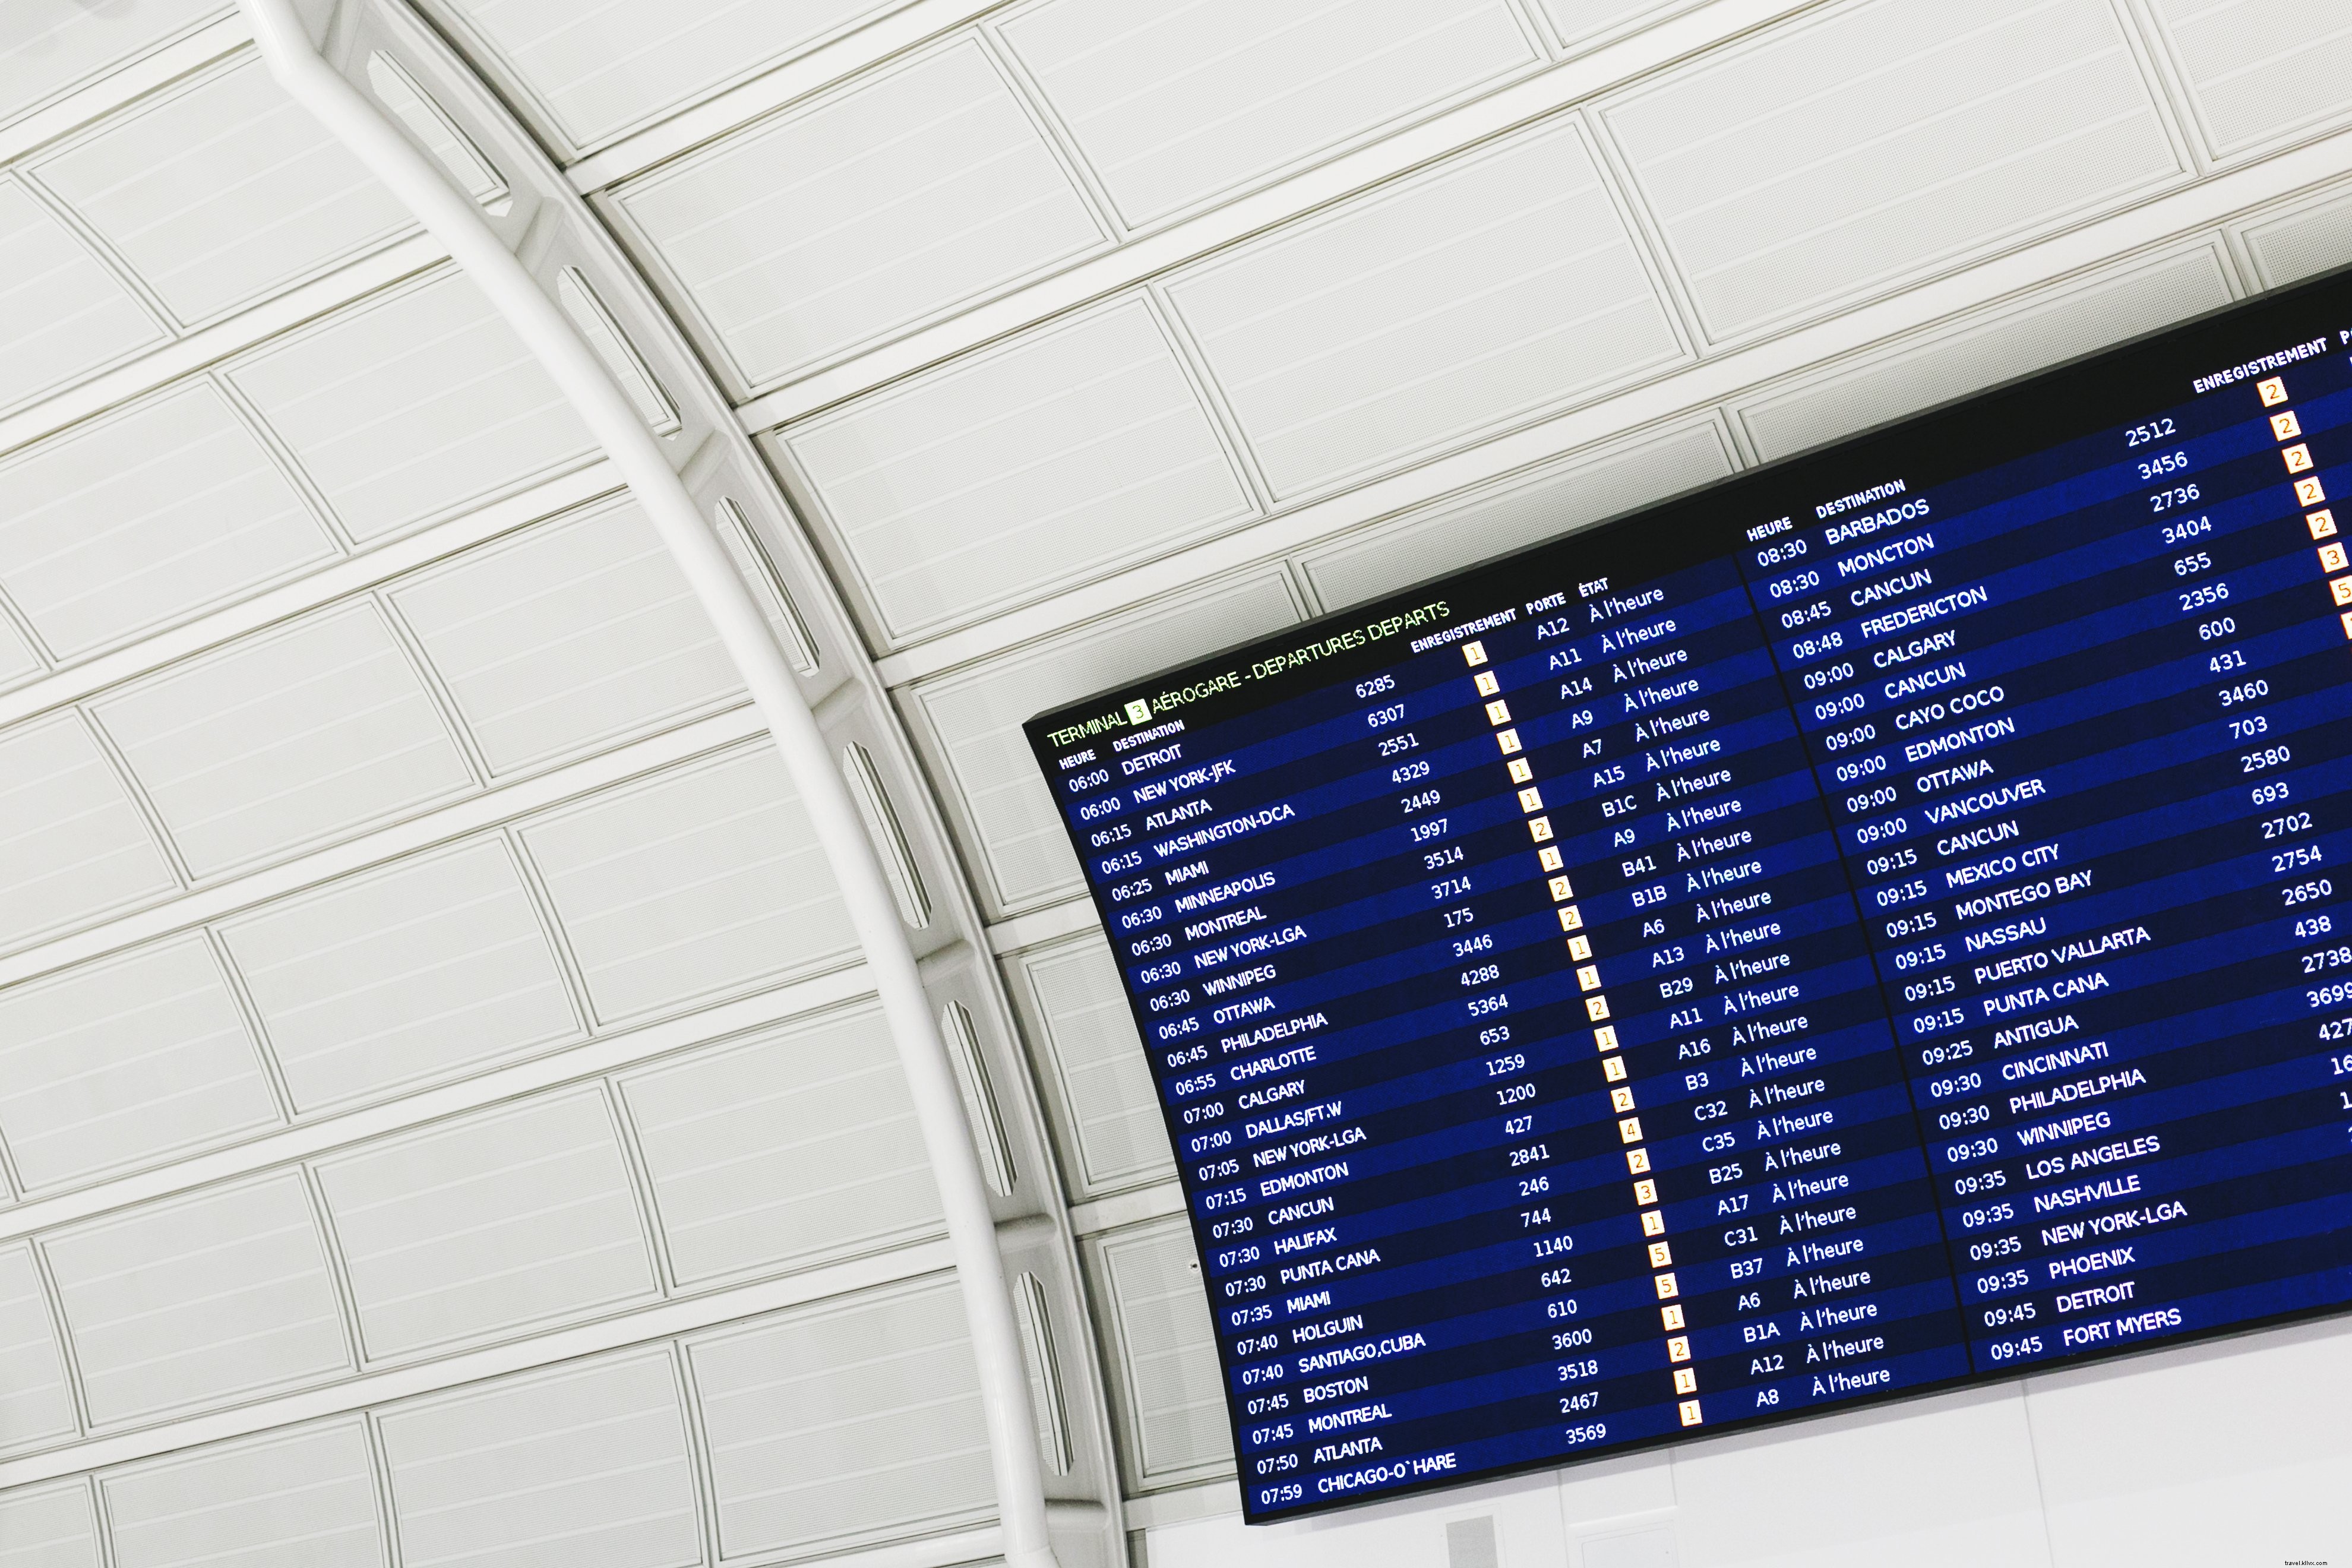 Foto do quadro de chegadas e partidas do aeroporto